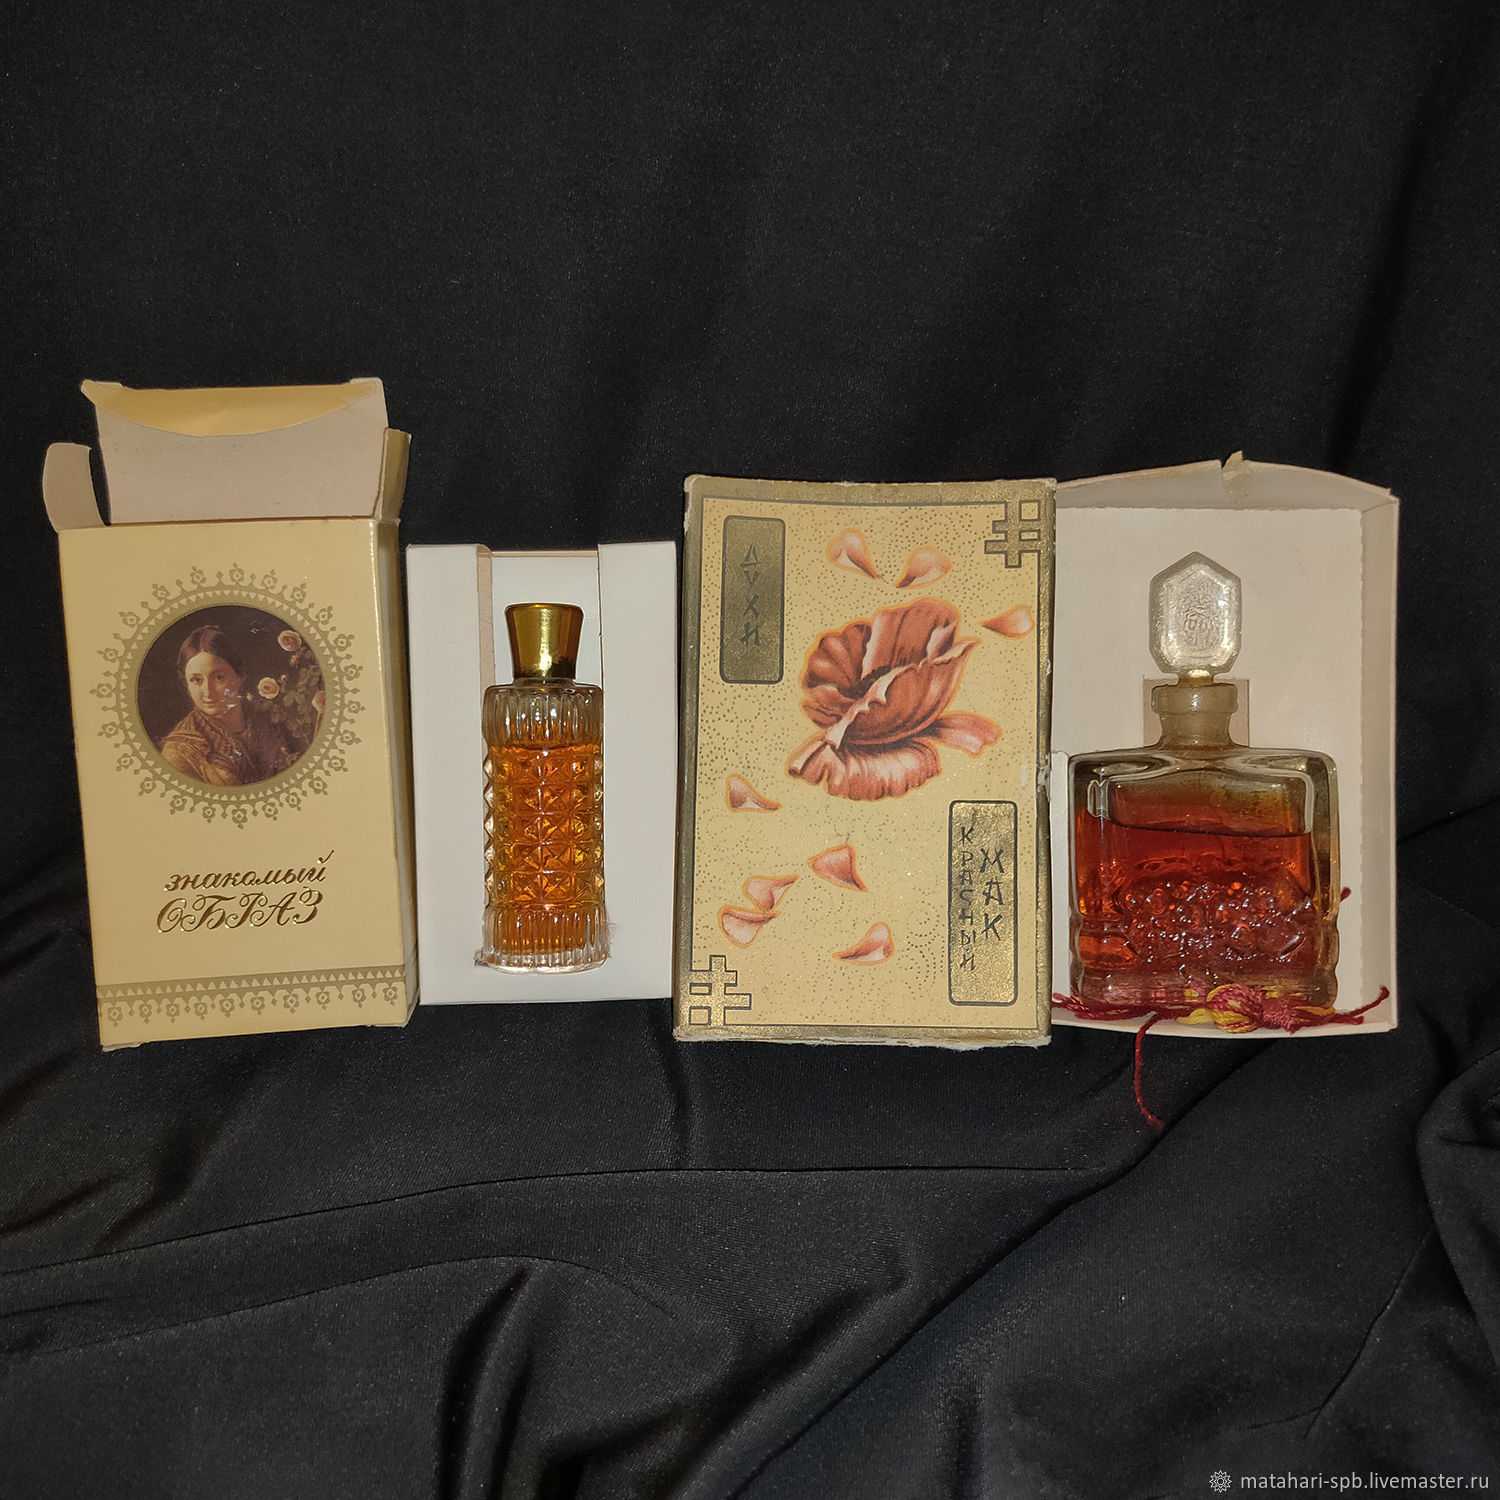 Балет, Революция, почти опиум в шедевре советской парфюмерии - все о легендарных духах Красный мак